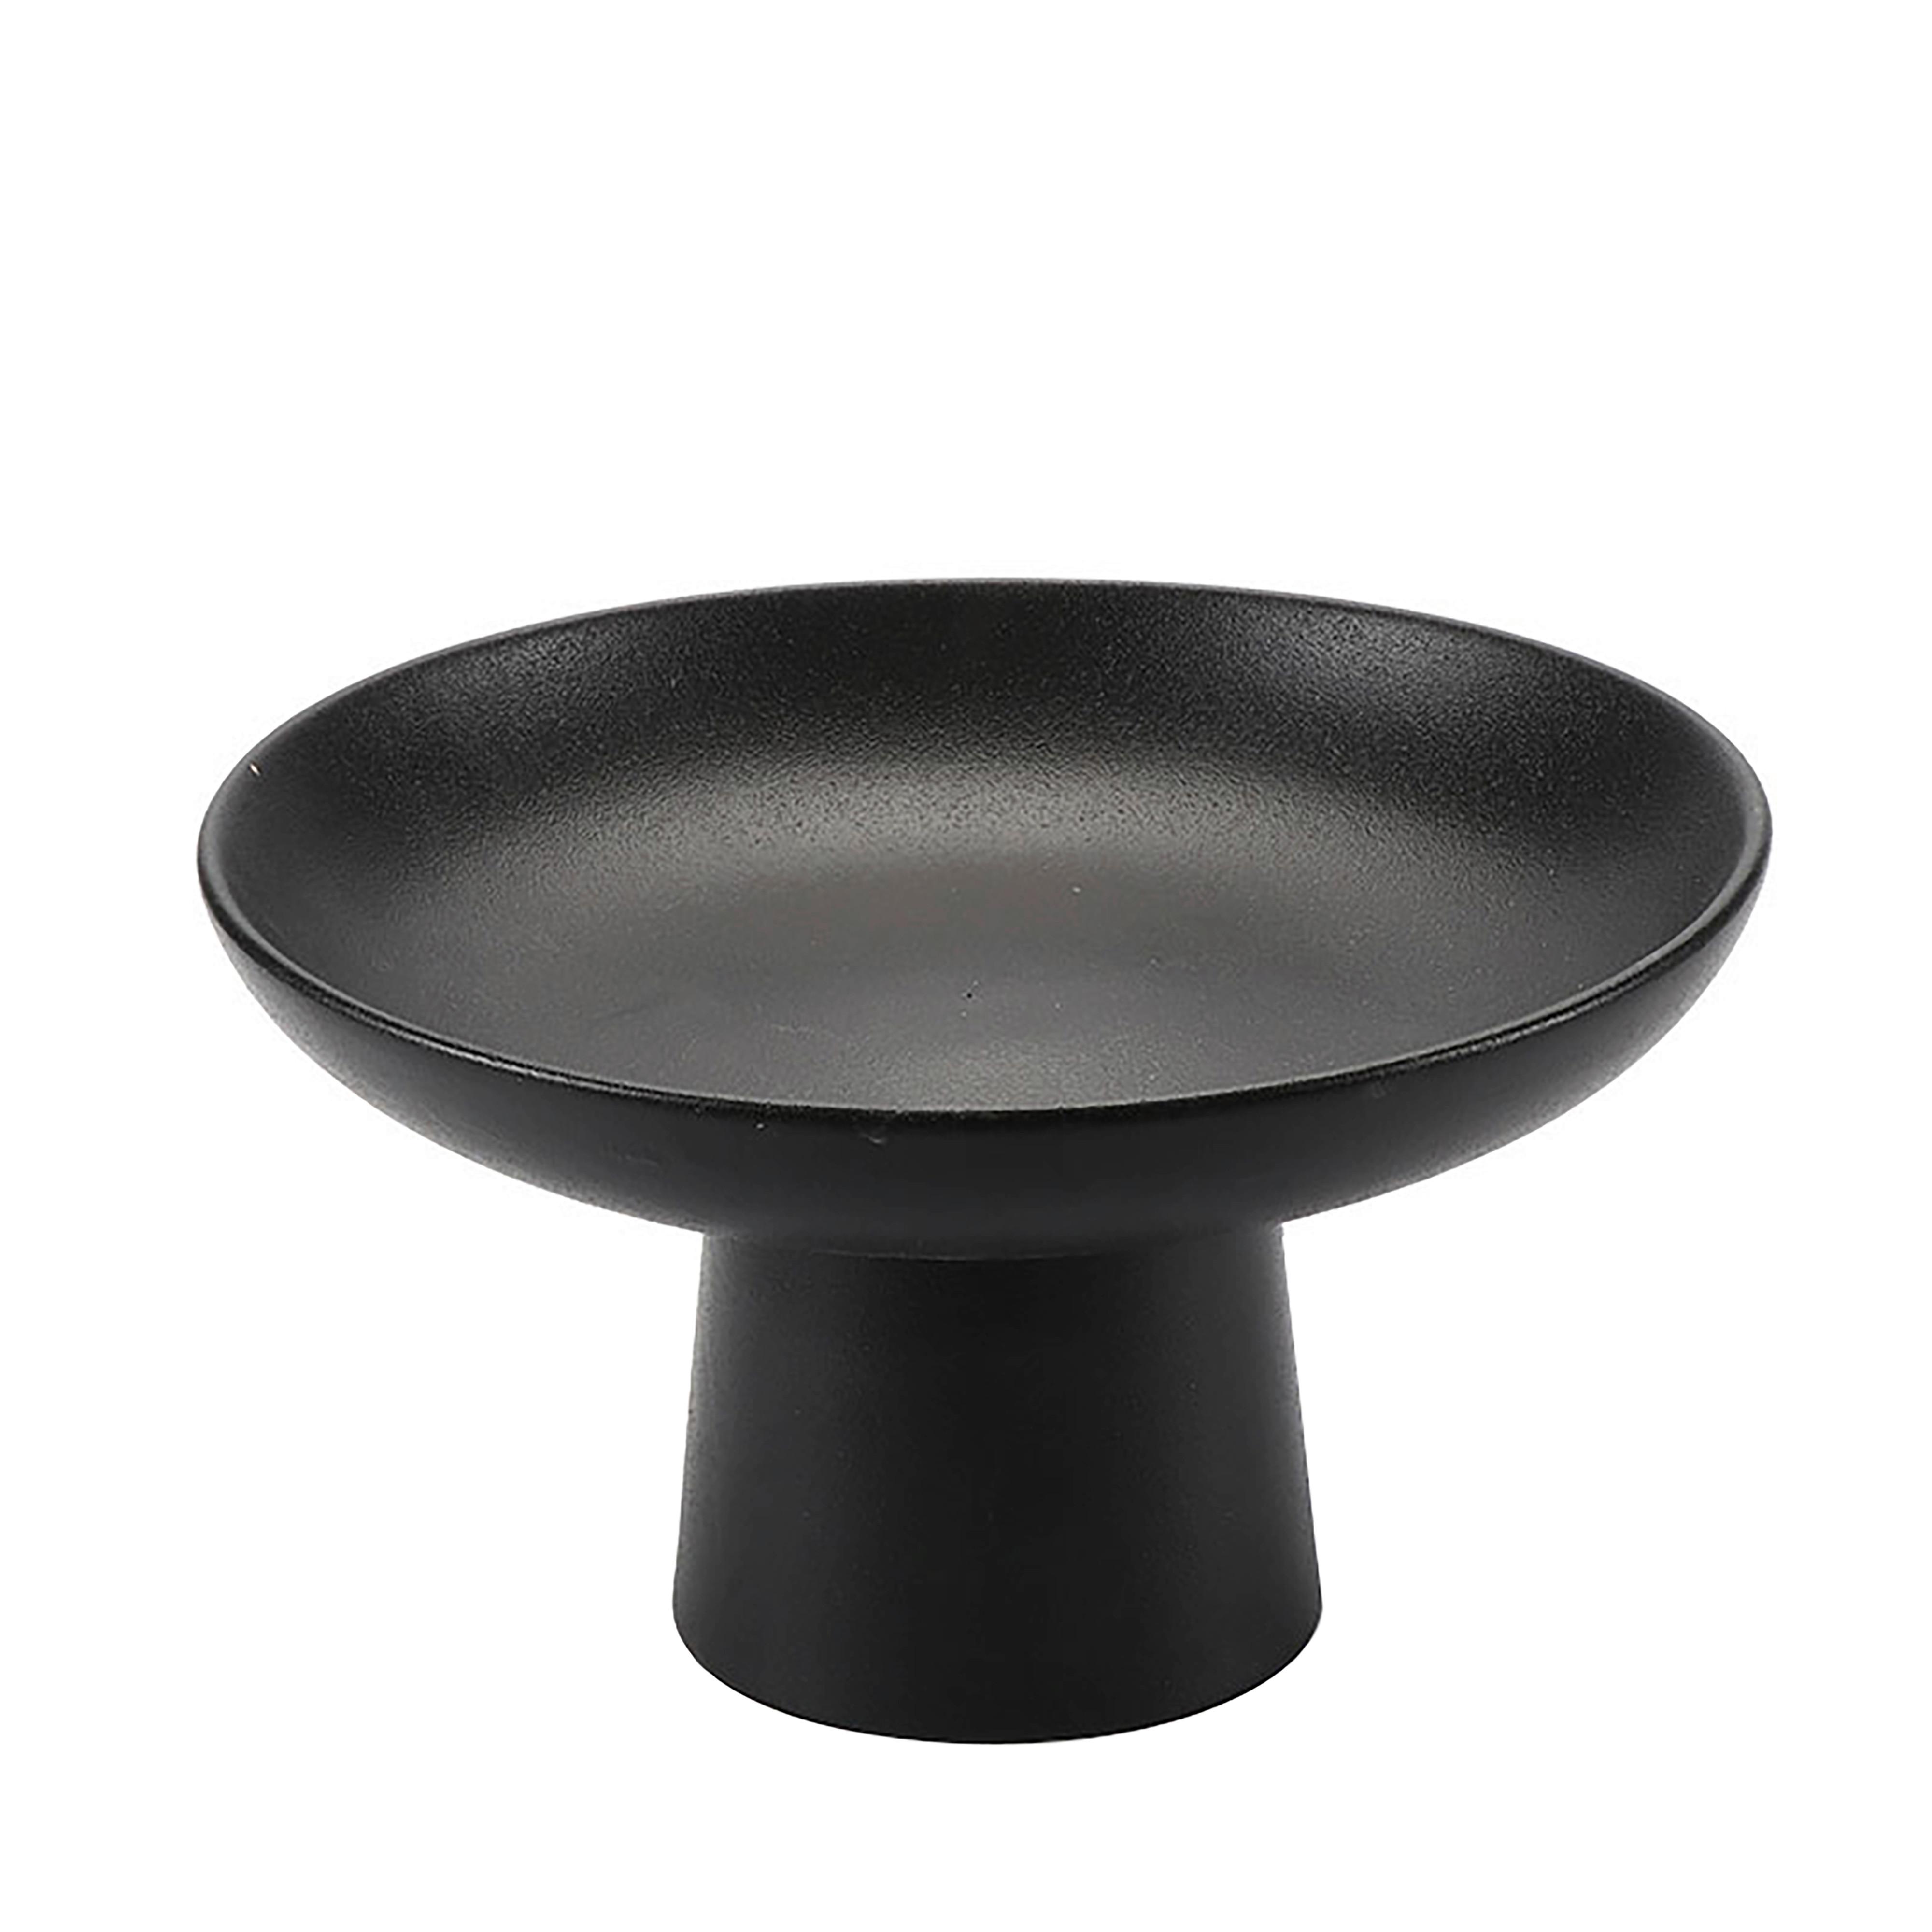 Dekorační Miska Noir, Ø: 23cm - černá, keramika (23/13cm) - Modern Living